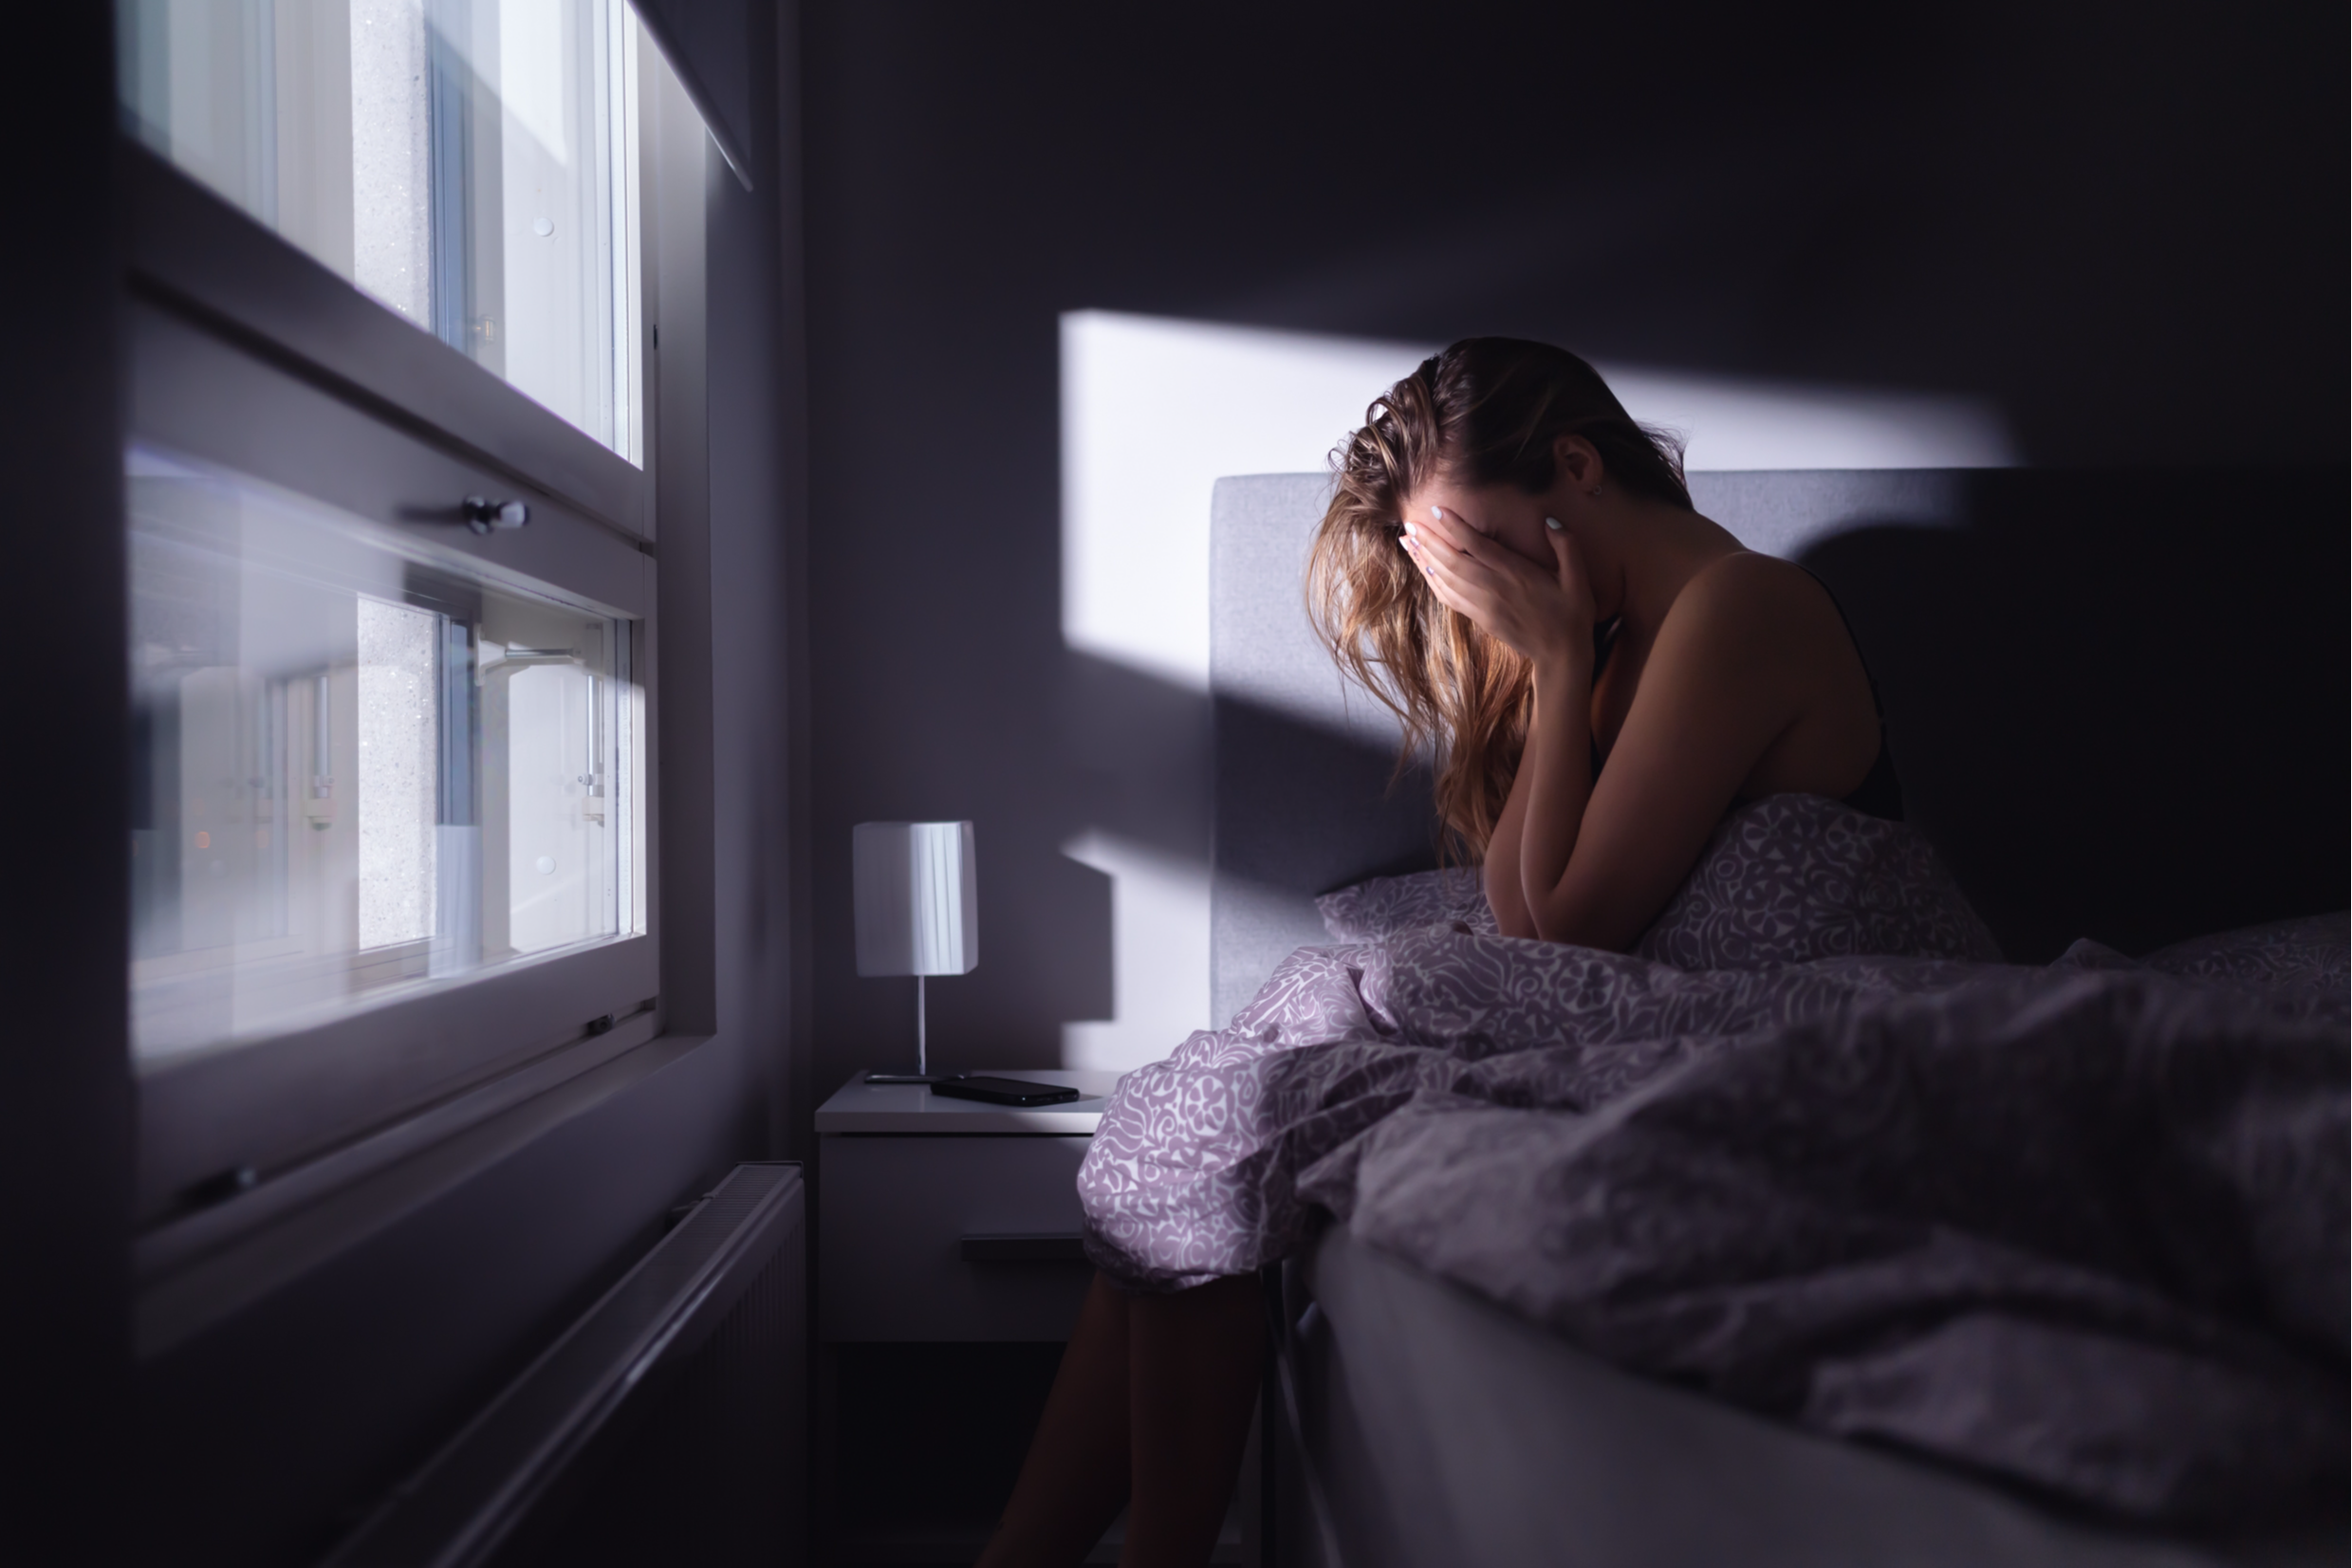 Ansiedade em excesso faz mal e precisa de tratamento quando afeta o dia a dia da pessoa. Crédito: Shutterstock